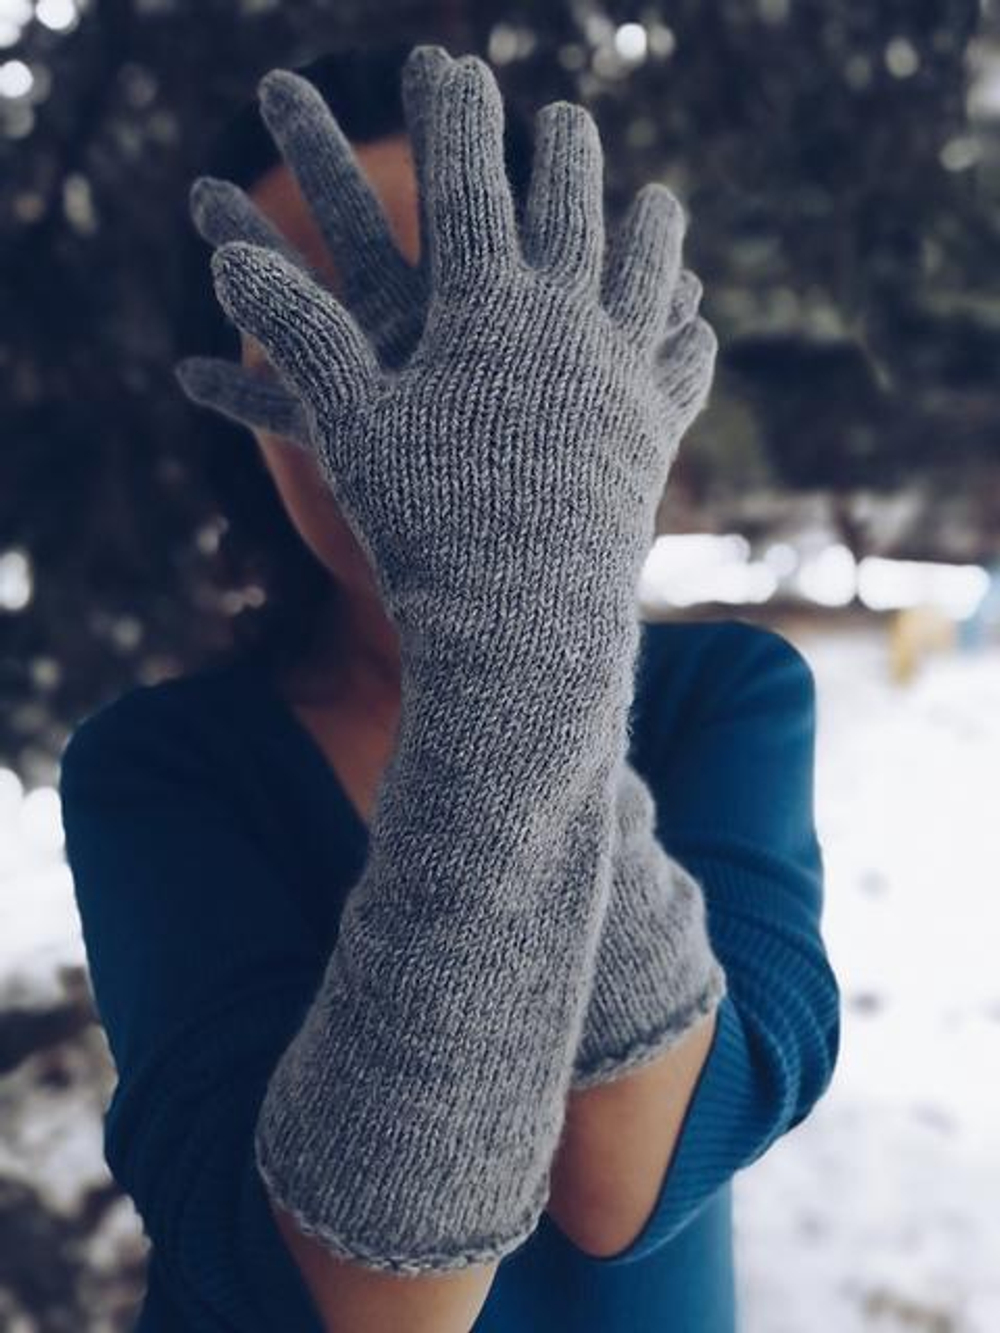 Фото Девушка в перчатках, более 97 качественных бесплатных стоковых фото